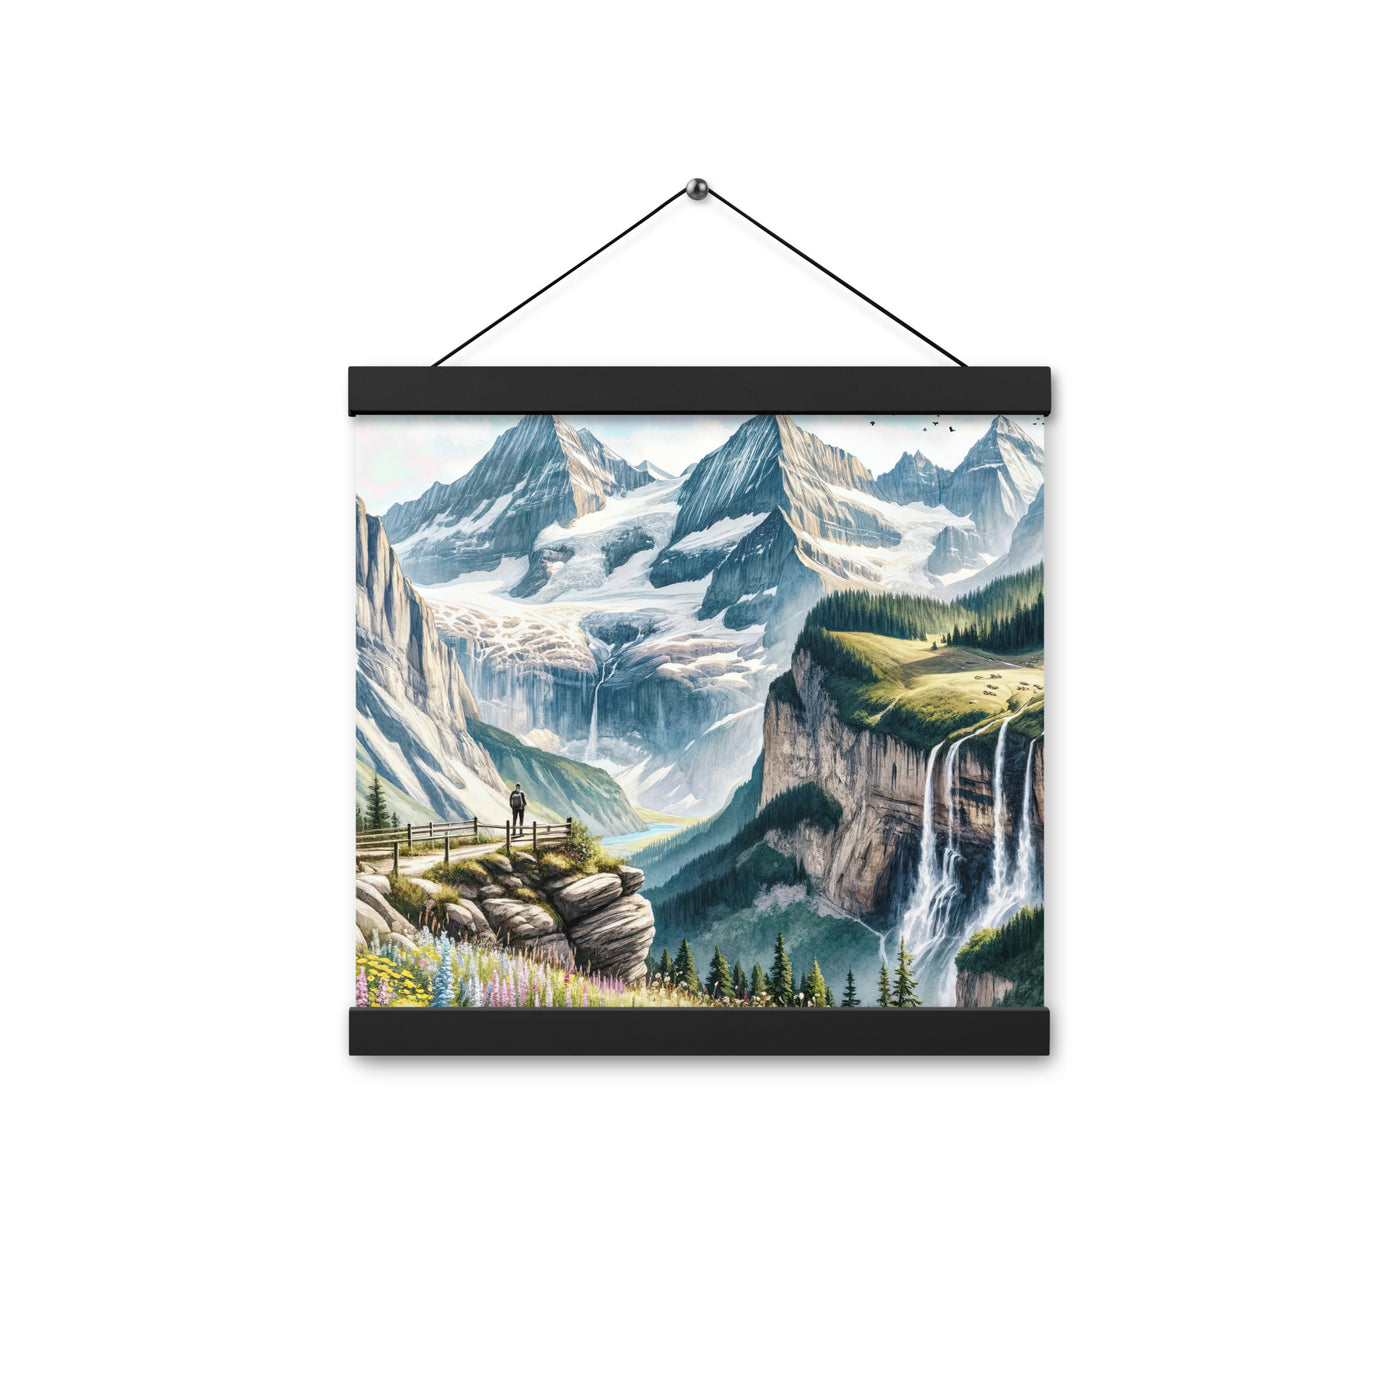 Aquarell-Panoramablick der Alpen mit schneebedeckten Gipfeln, Wasserfällen und Wanderern - Premium Poster mit Aufhängung wandern xxx yyy zzz 30.5 x 30.5 cm